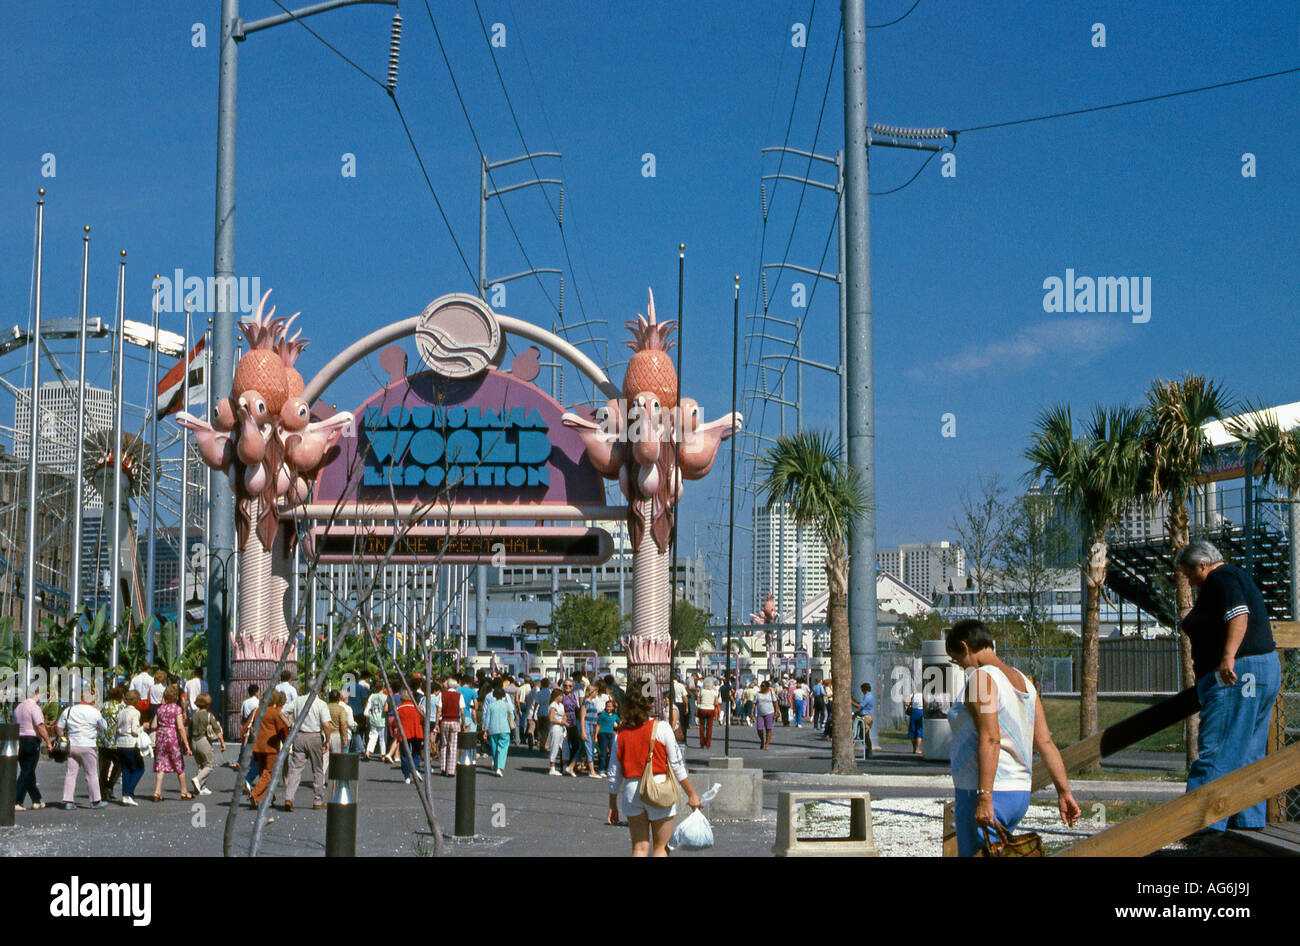 Entrance to Louisiana Expo New Orleans 1984 Stock Photo